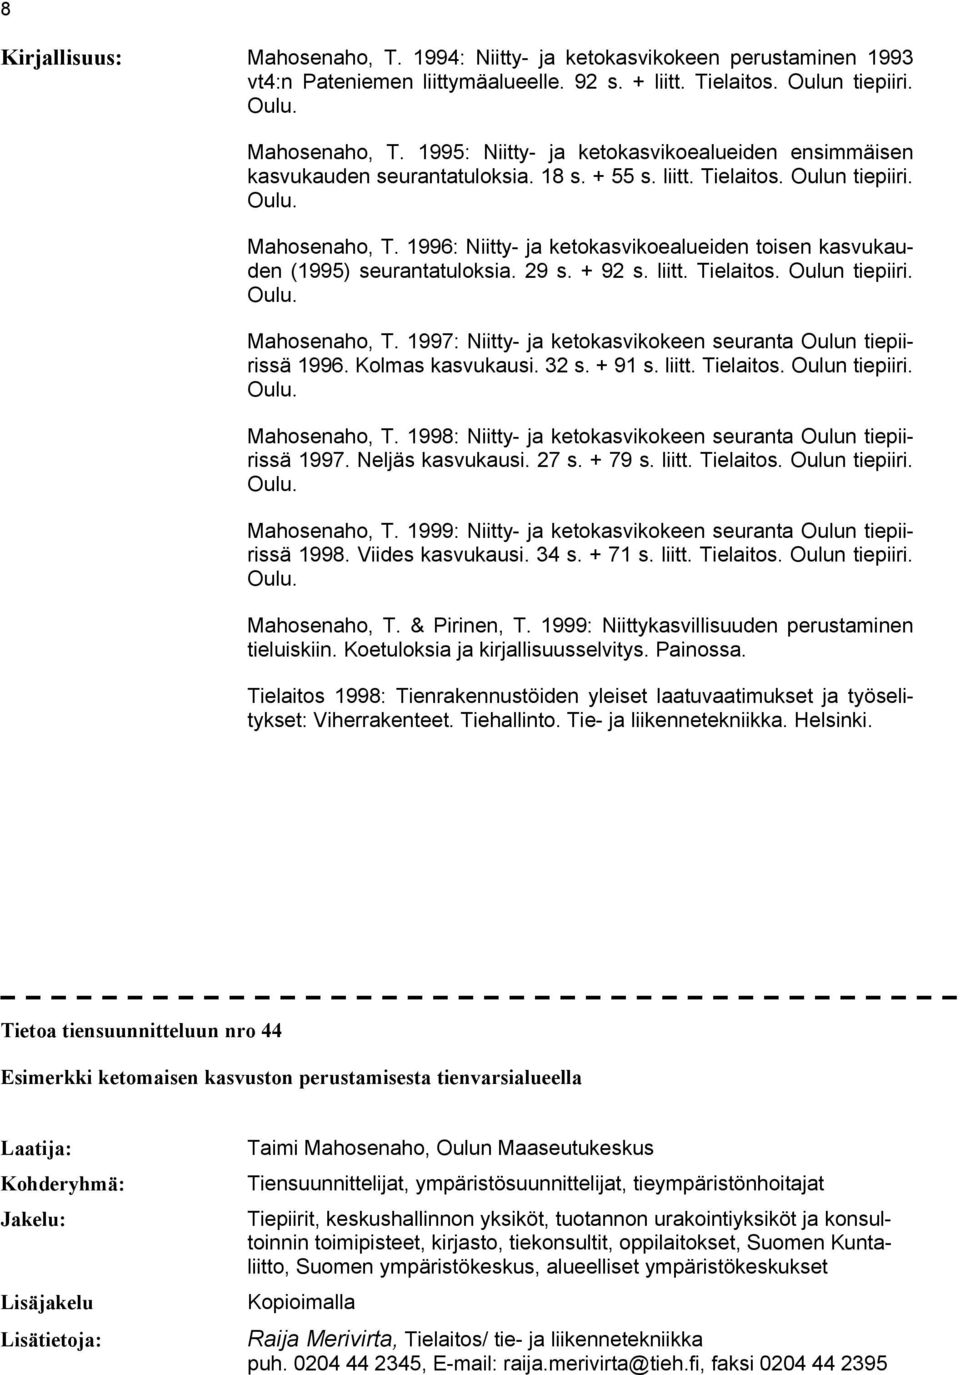 Kolmas kasvukausi. 32 s. + 91 s. liitt. Tielaitos. Oulun tiepiiri. Mahosenaho, T. 1998: Niitty- ja ketokasvikokeen seuranta Oulun tiepiirissä 1997. Neljäs kasvukausi. 27 s. + 79 s. liitt. Tielaitos. Oulun tiepiiri. Mahosenaho, T. 1999: Niitty- ja ketokasvikokeen seuranta Oulun tiepiirissä 1998.